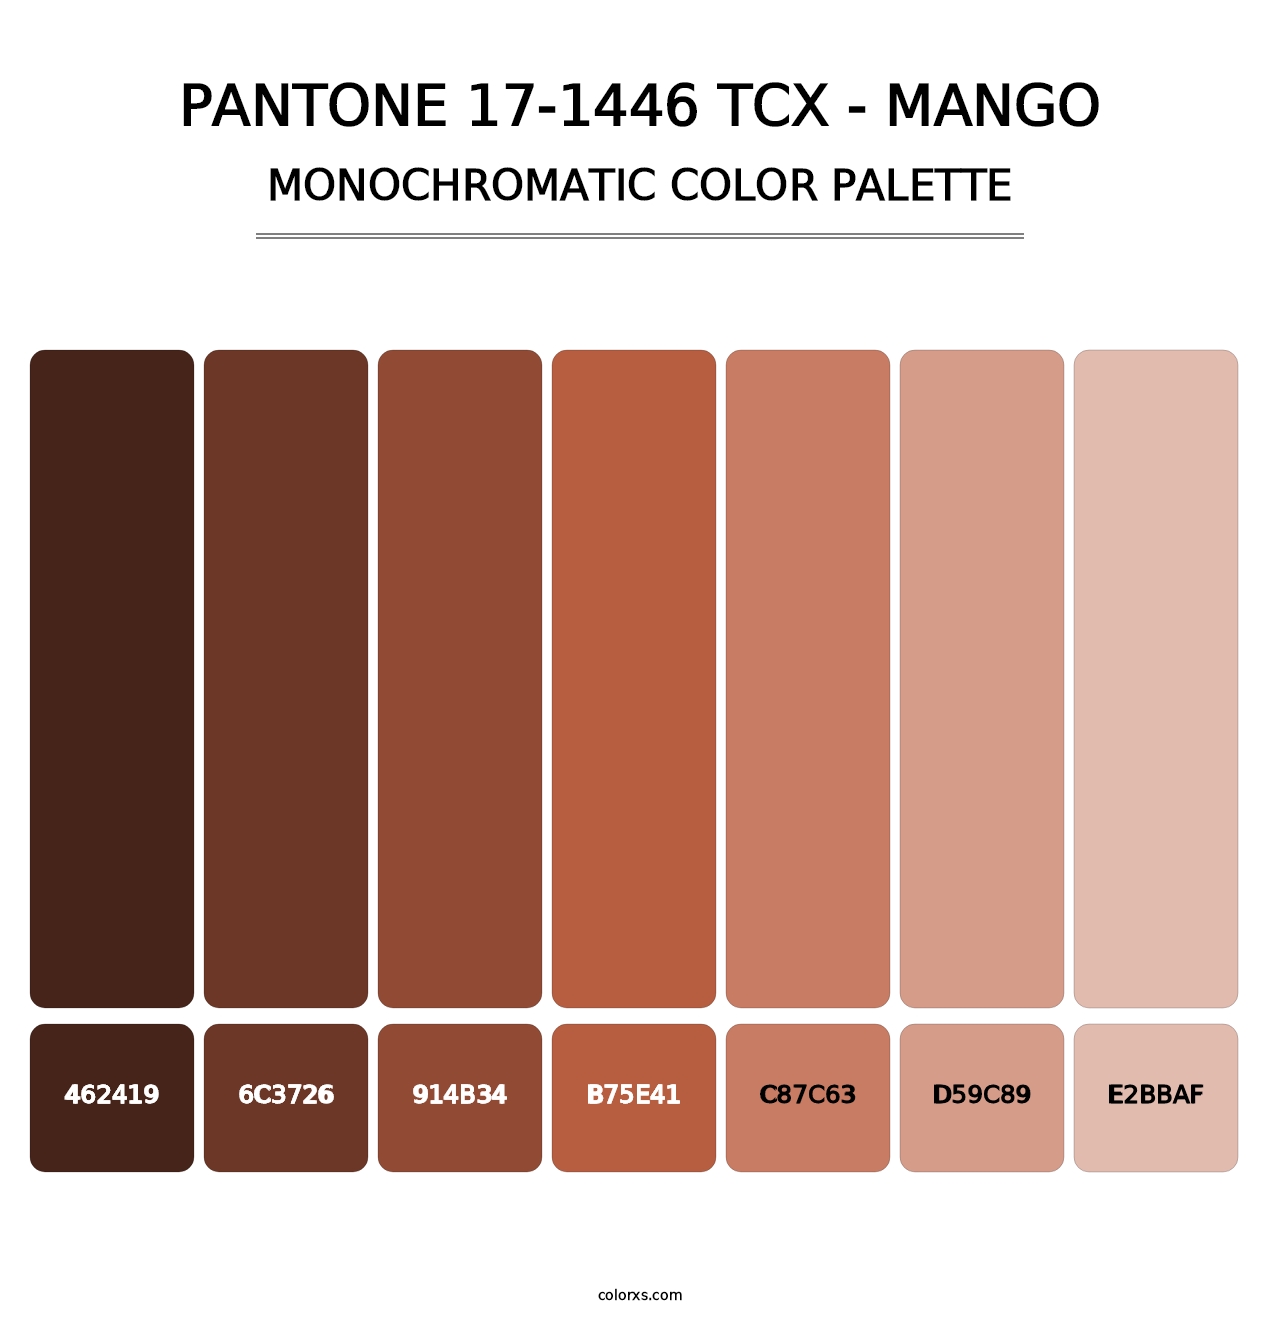 PANTONE 17-1446 TCX - Mango - Monochromatic Color Palette